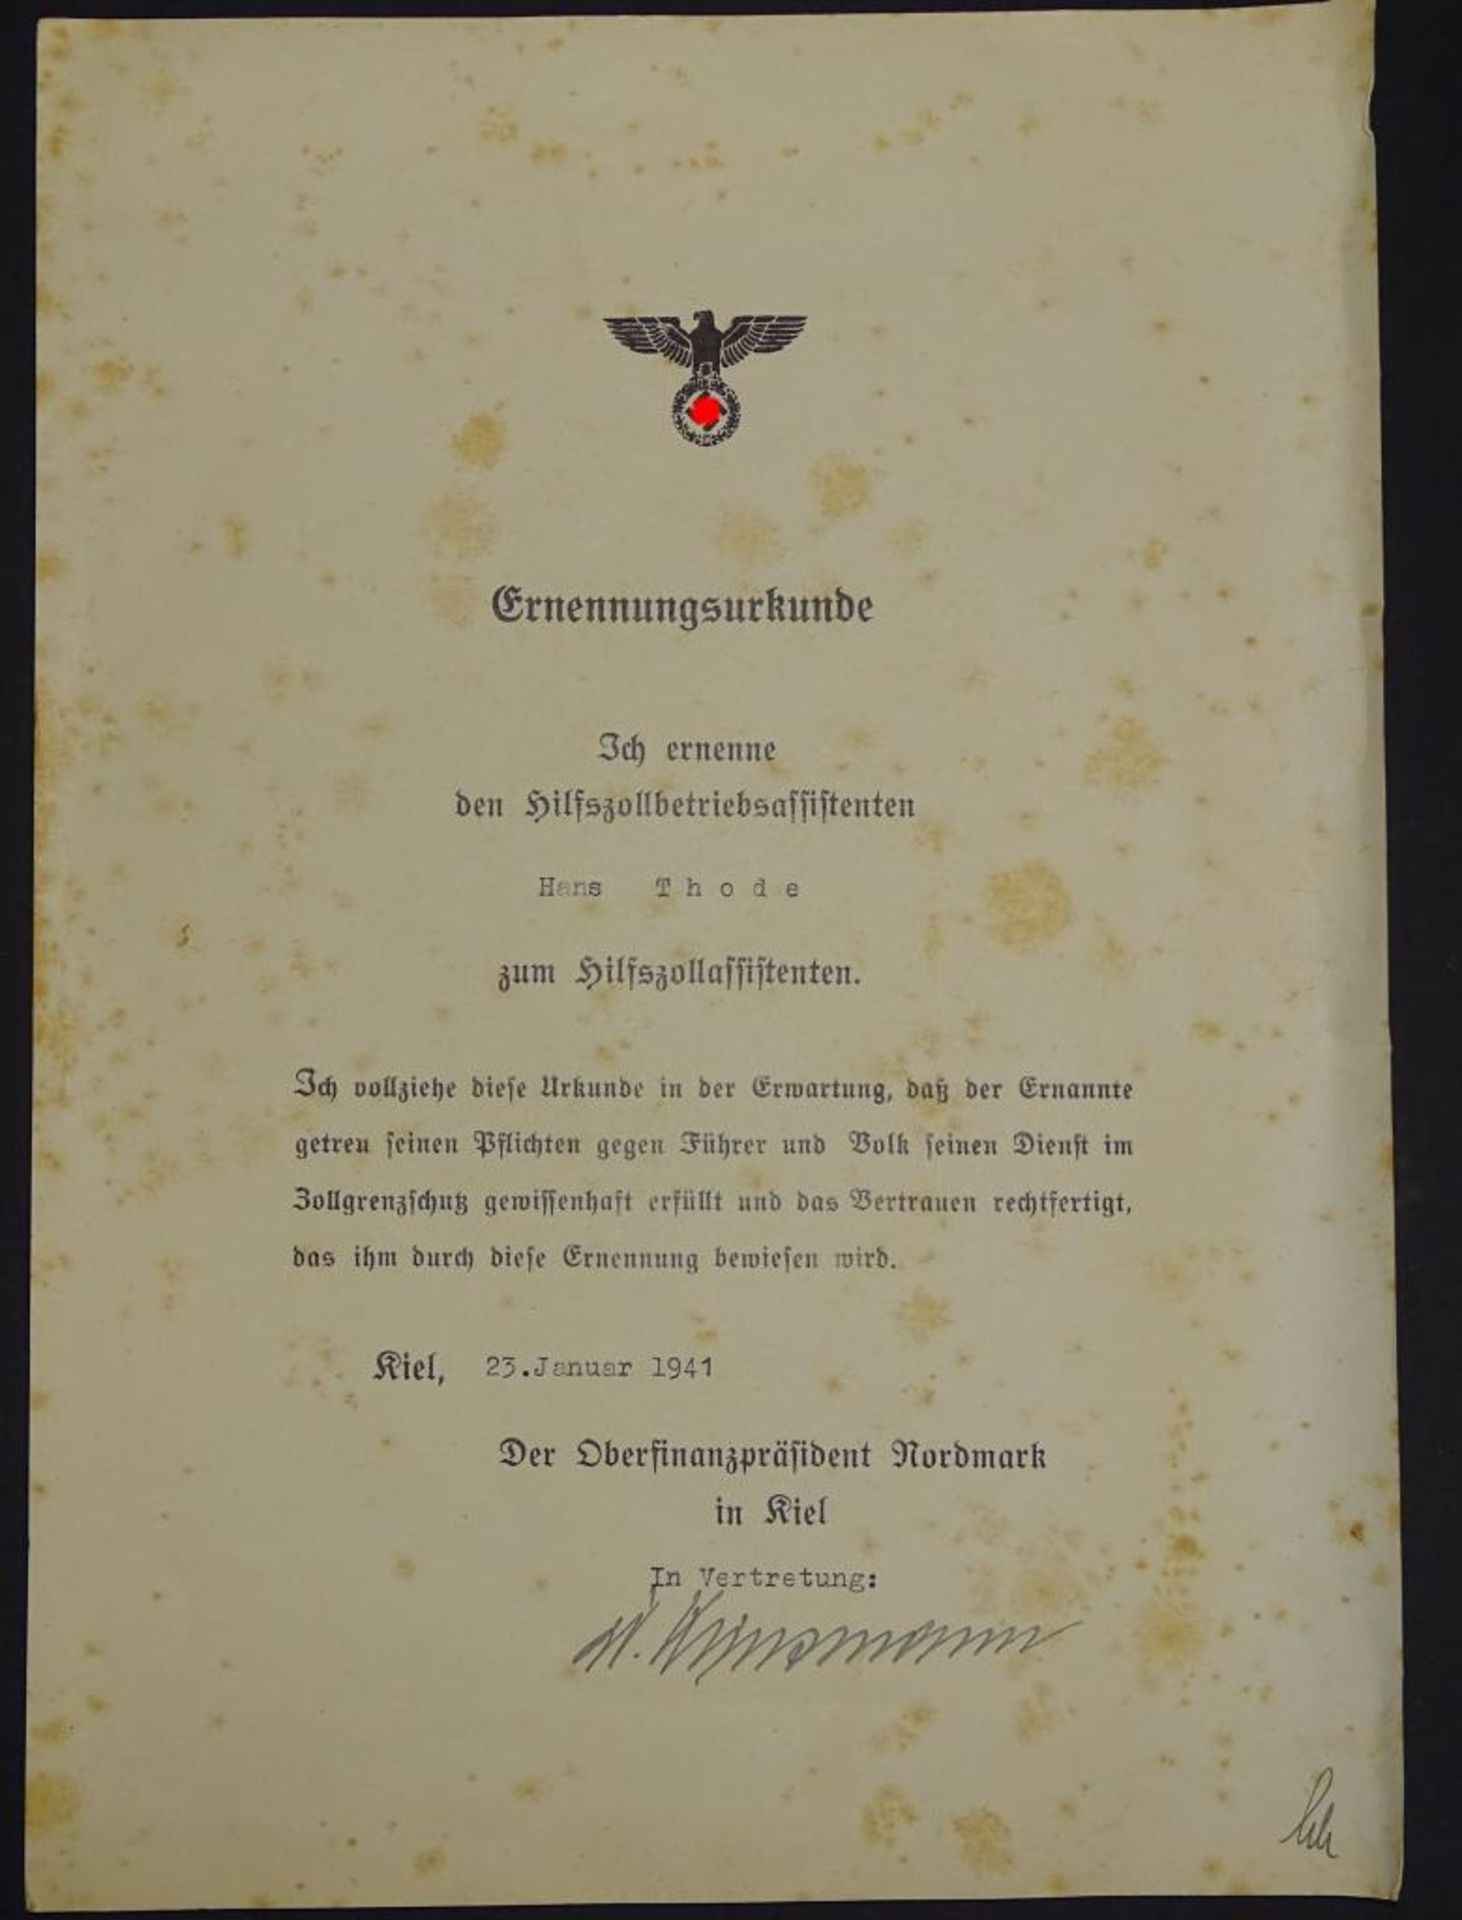 Ernennungsurkunde,Hilfszollbetriebsassistenten zum Hilfszollassistenten, 1941